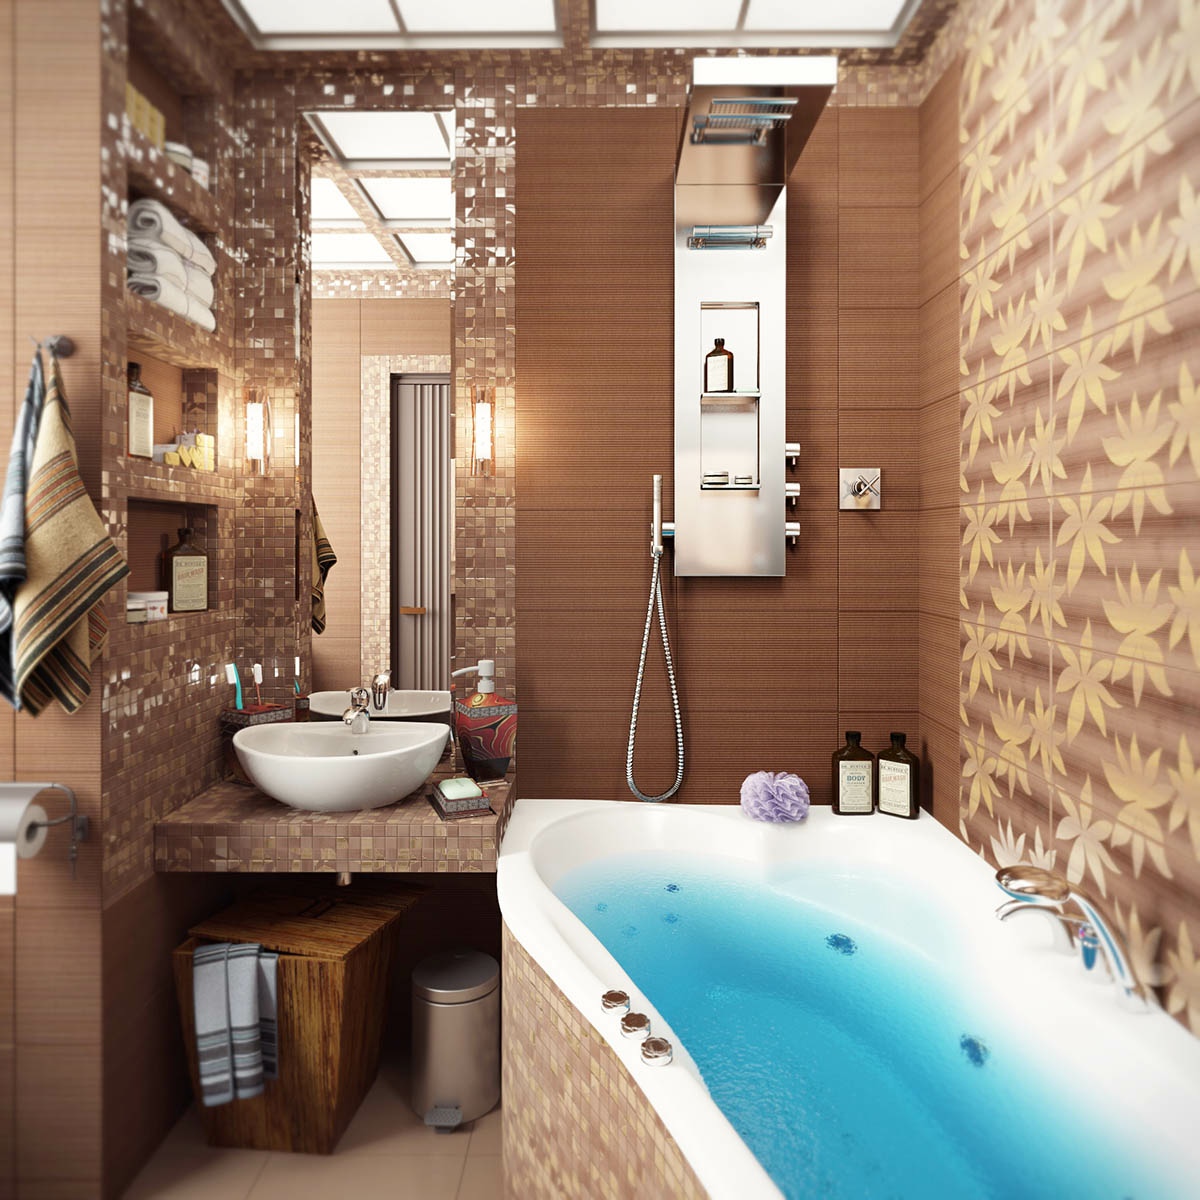 Image thiết kế nội thất phòng tắm với lượng ánh sáng đạt chuẩn